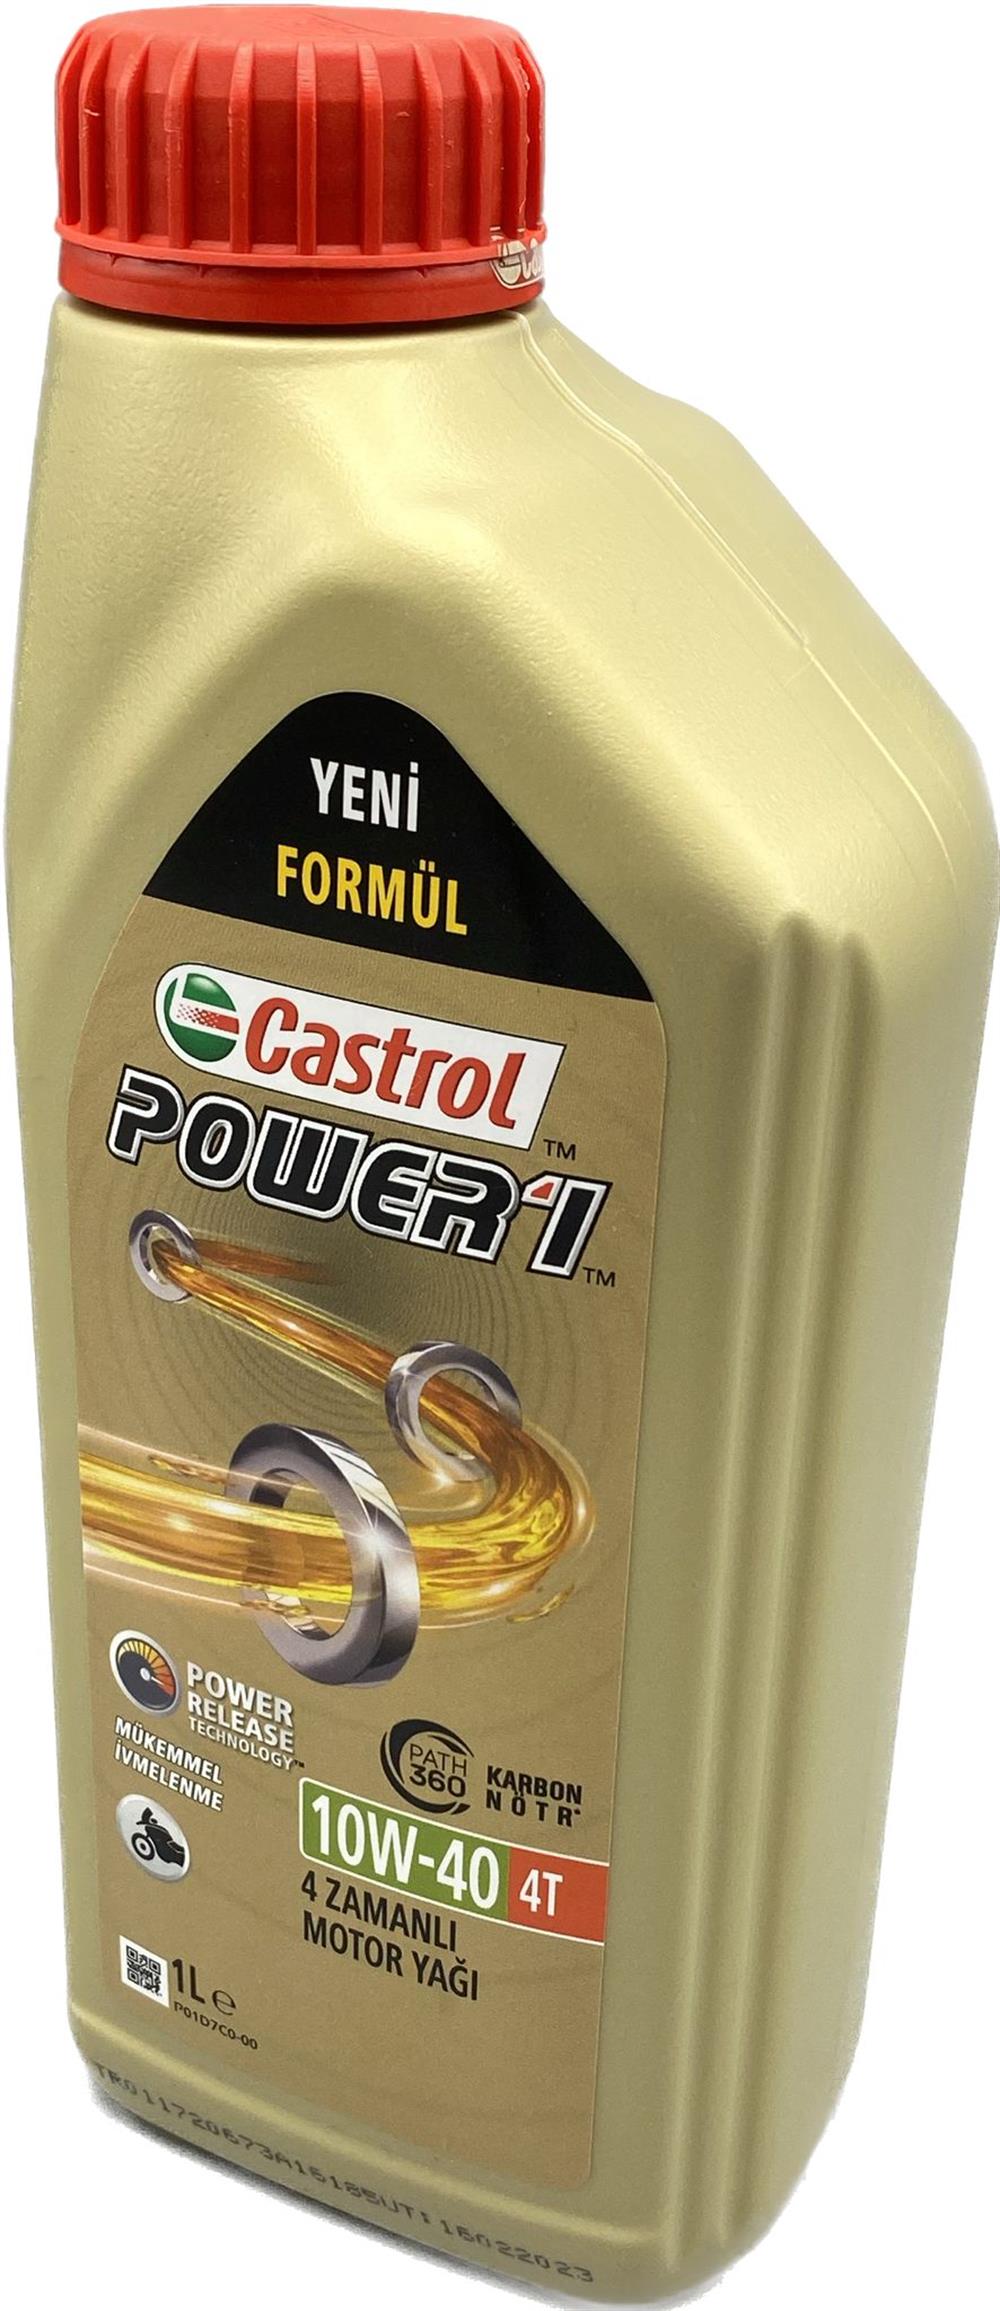 カストロール(Castrol) エンジンオイル POWER1 4T 10W-40 4L 二輪車4サイクルエ 最安値に挑戦 - メンテナンス用品